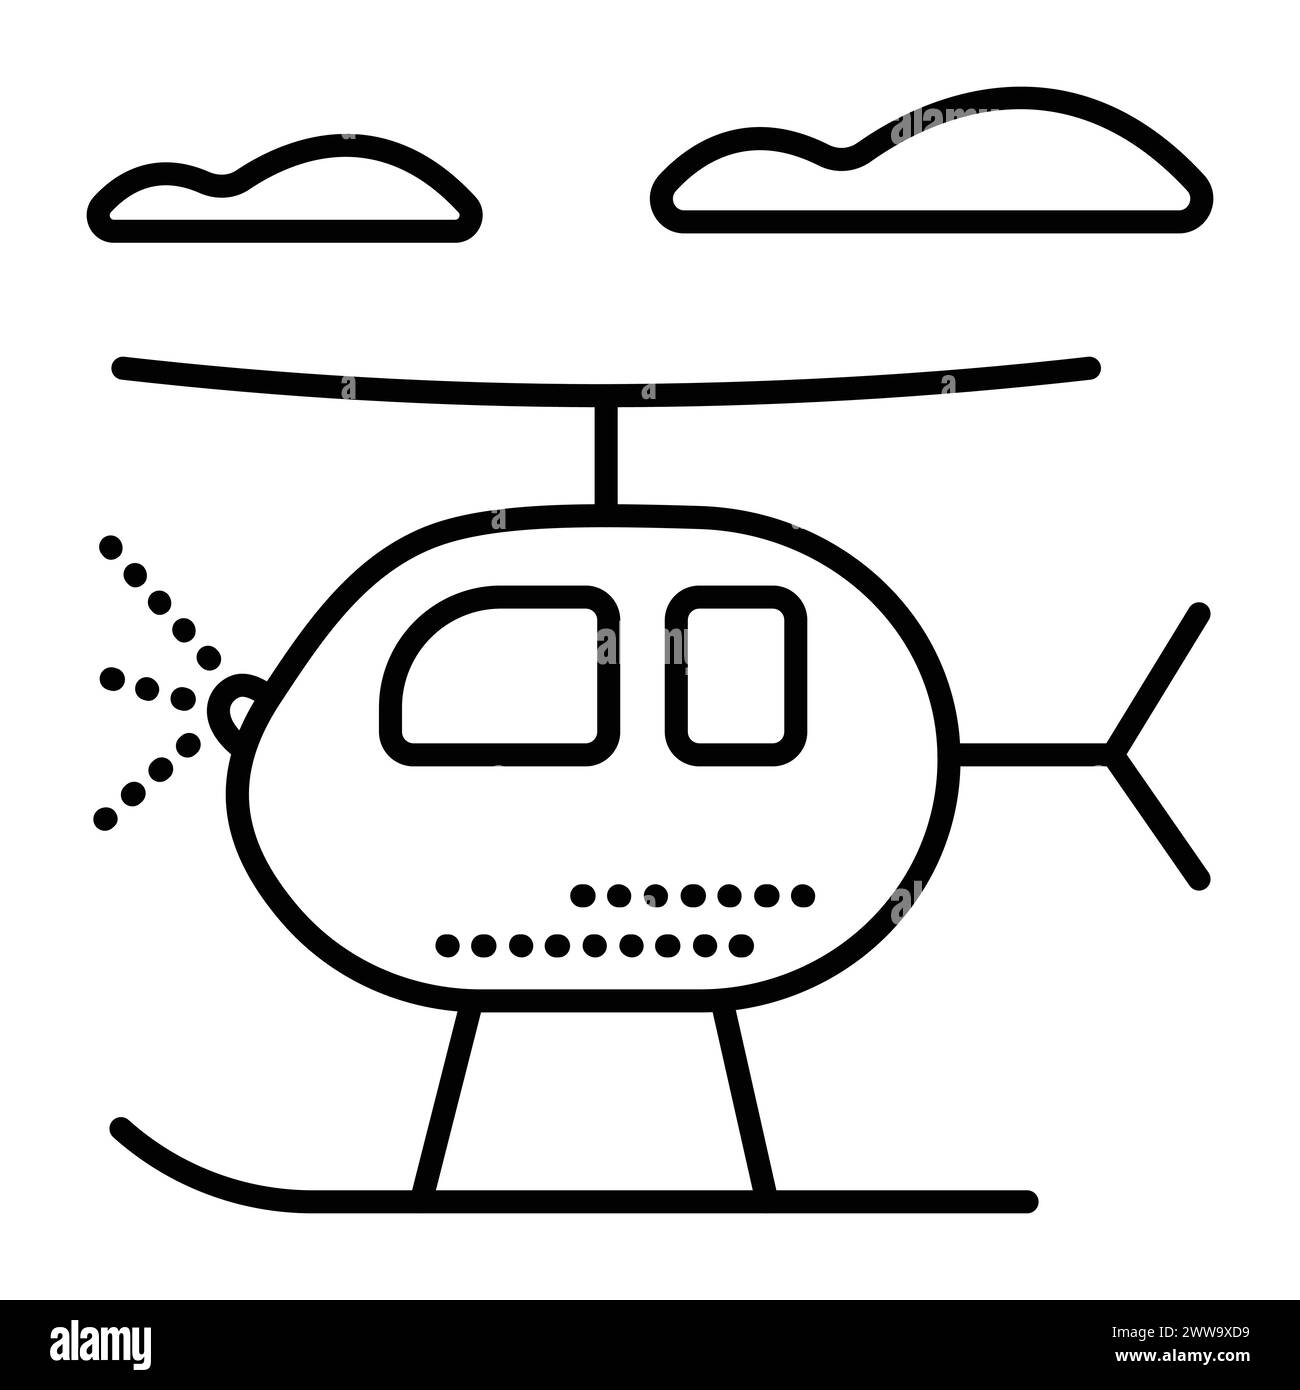 Hélicoptère unique avec patins, icône de vecteur de ligne noire, nuages et pictogramme de copter, chopper occidental mignon avec un train d'atterrissage, illustration minimale de taxi aérien Illustration de Vecteur